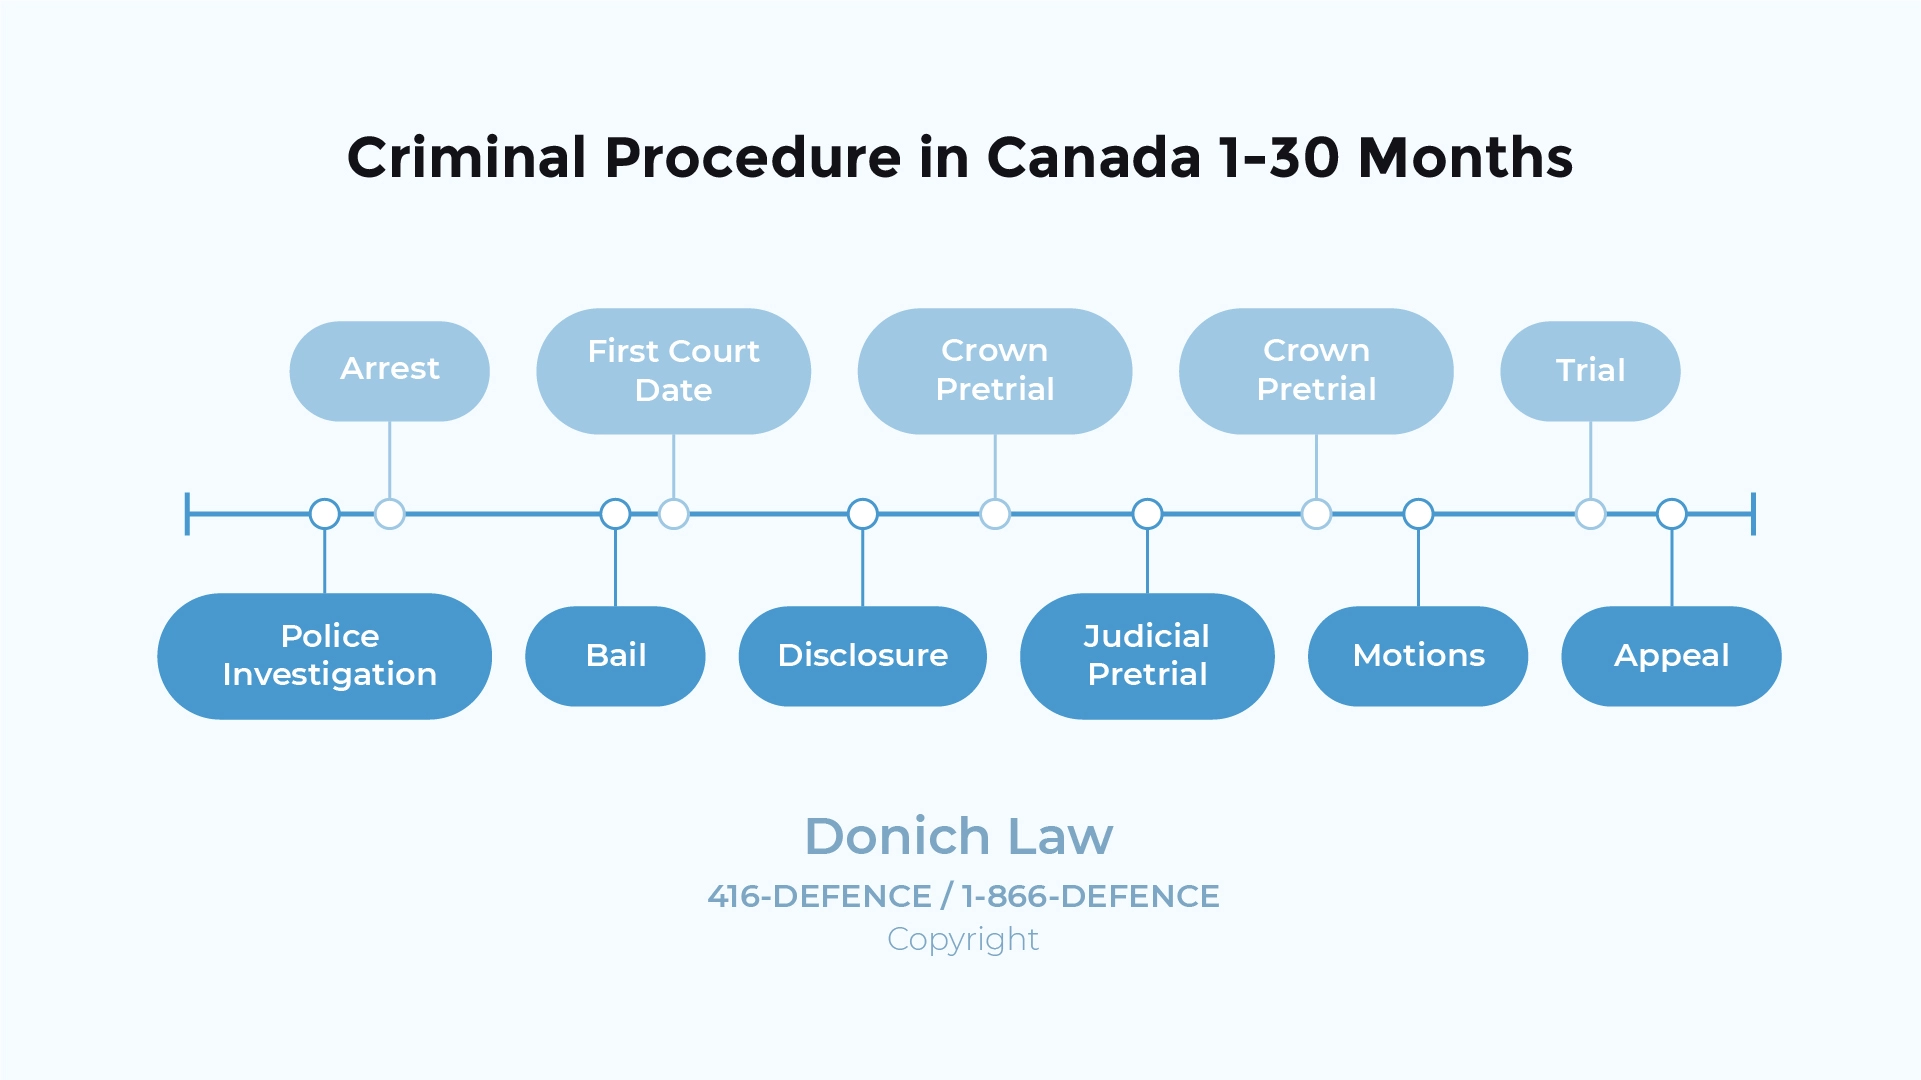 Donich Law - Assault Punishments